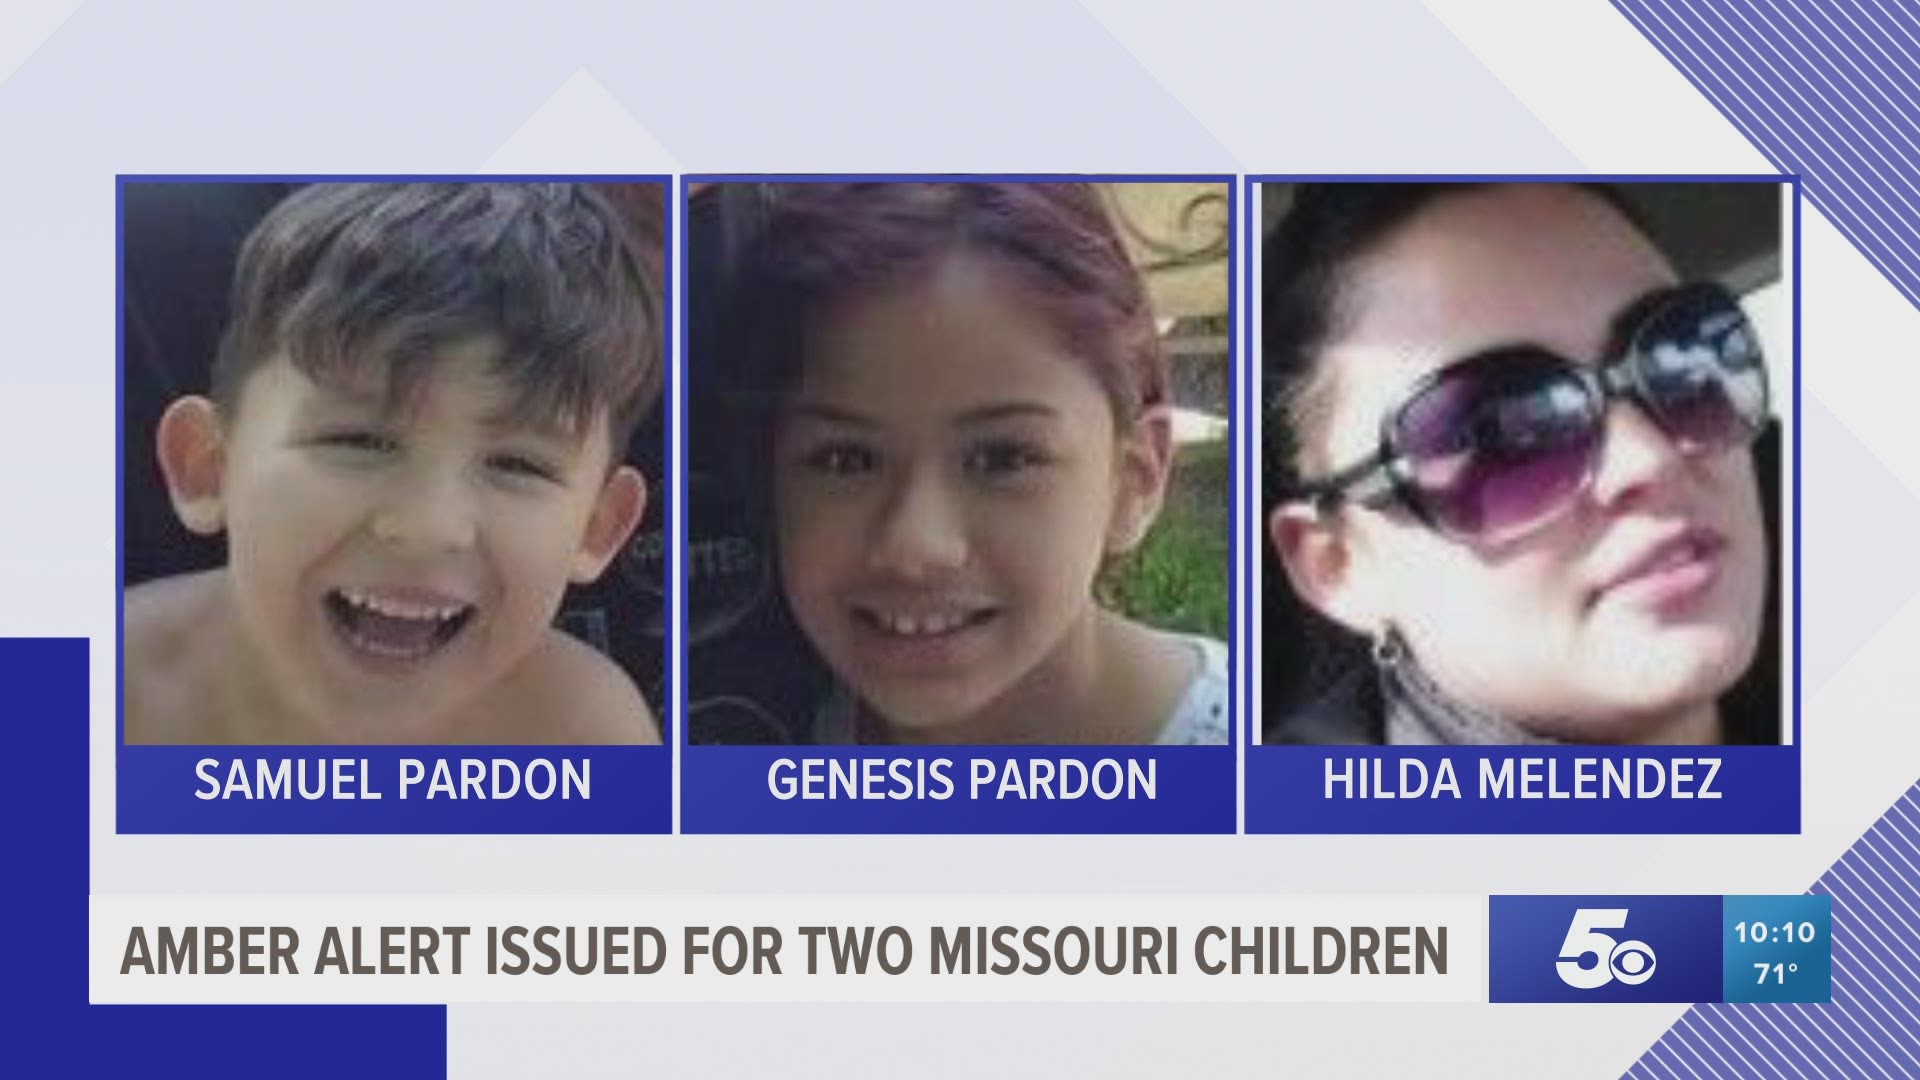 Amber Alert issued for two Missouri children